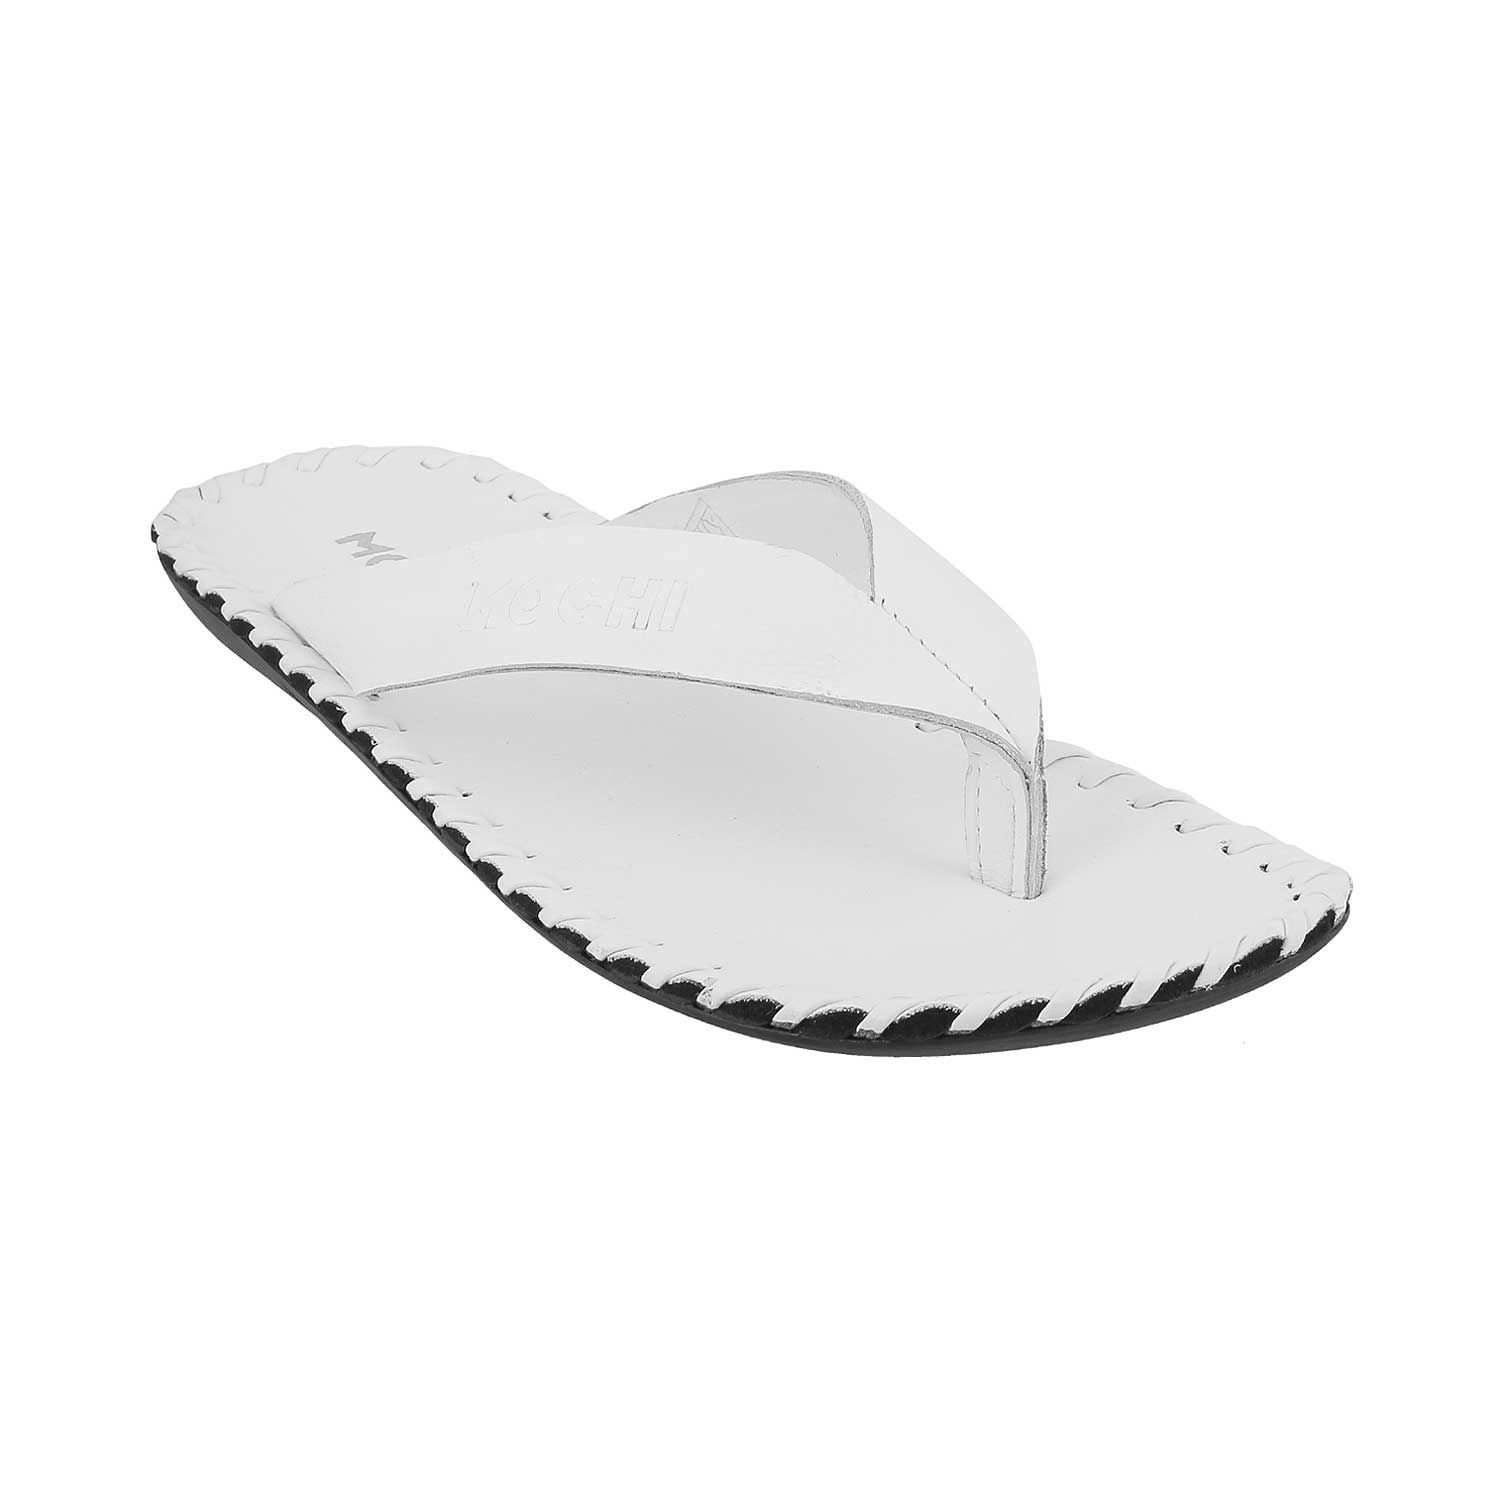 white sandals for mens online